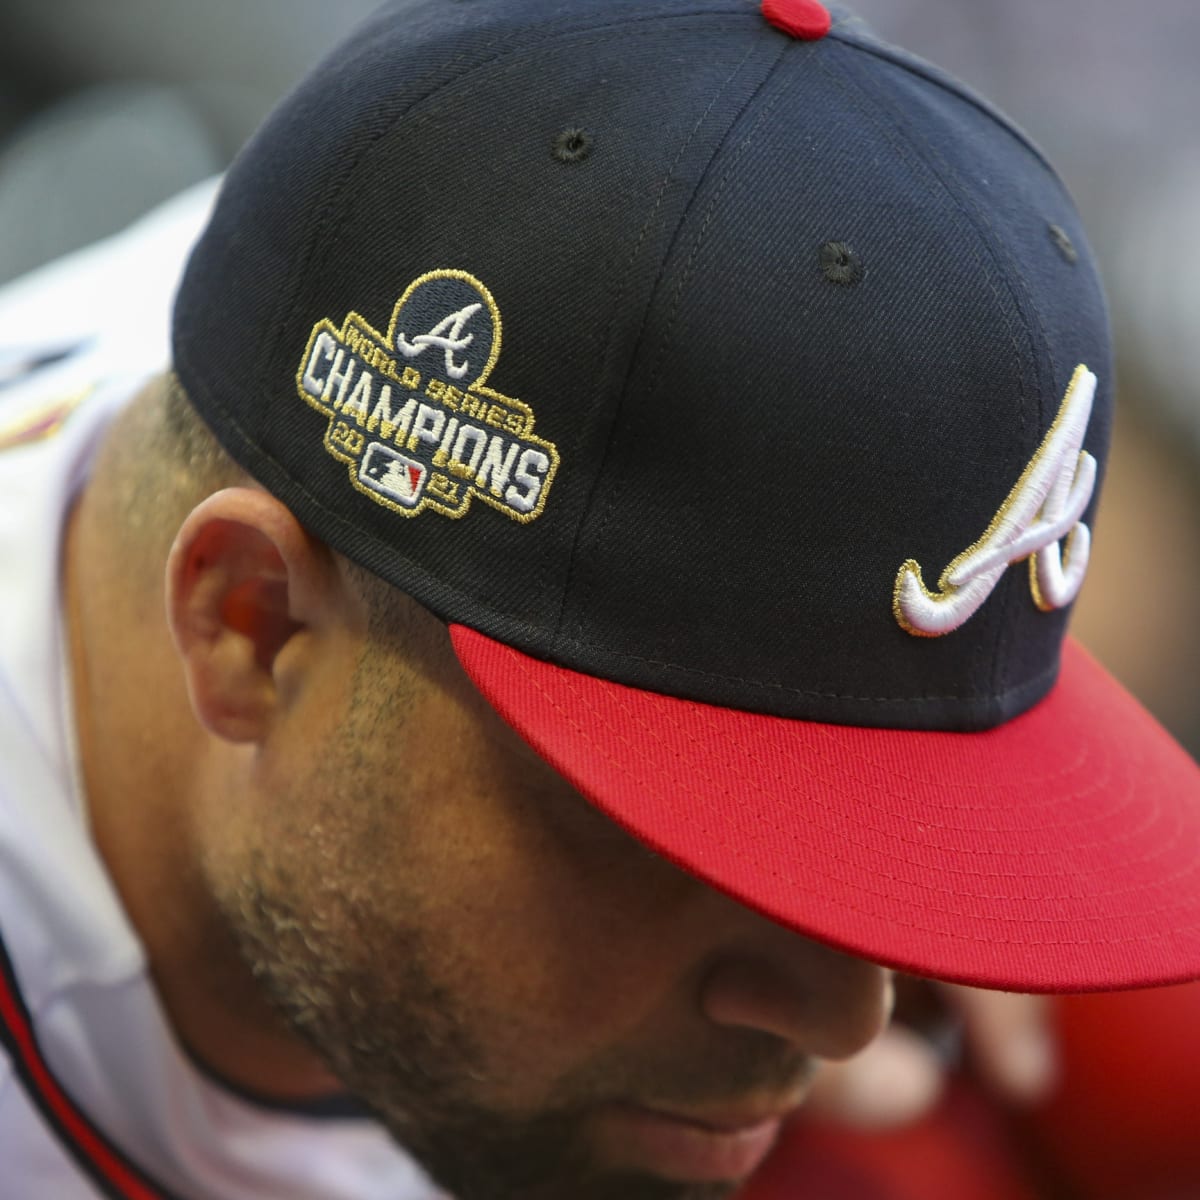 Atlanta Braves 'Big Hat' Home Run Celebration Has to Go Bye-Bye